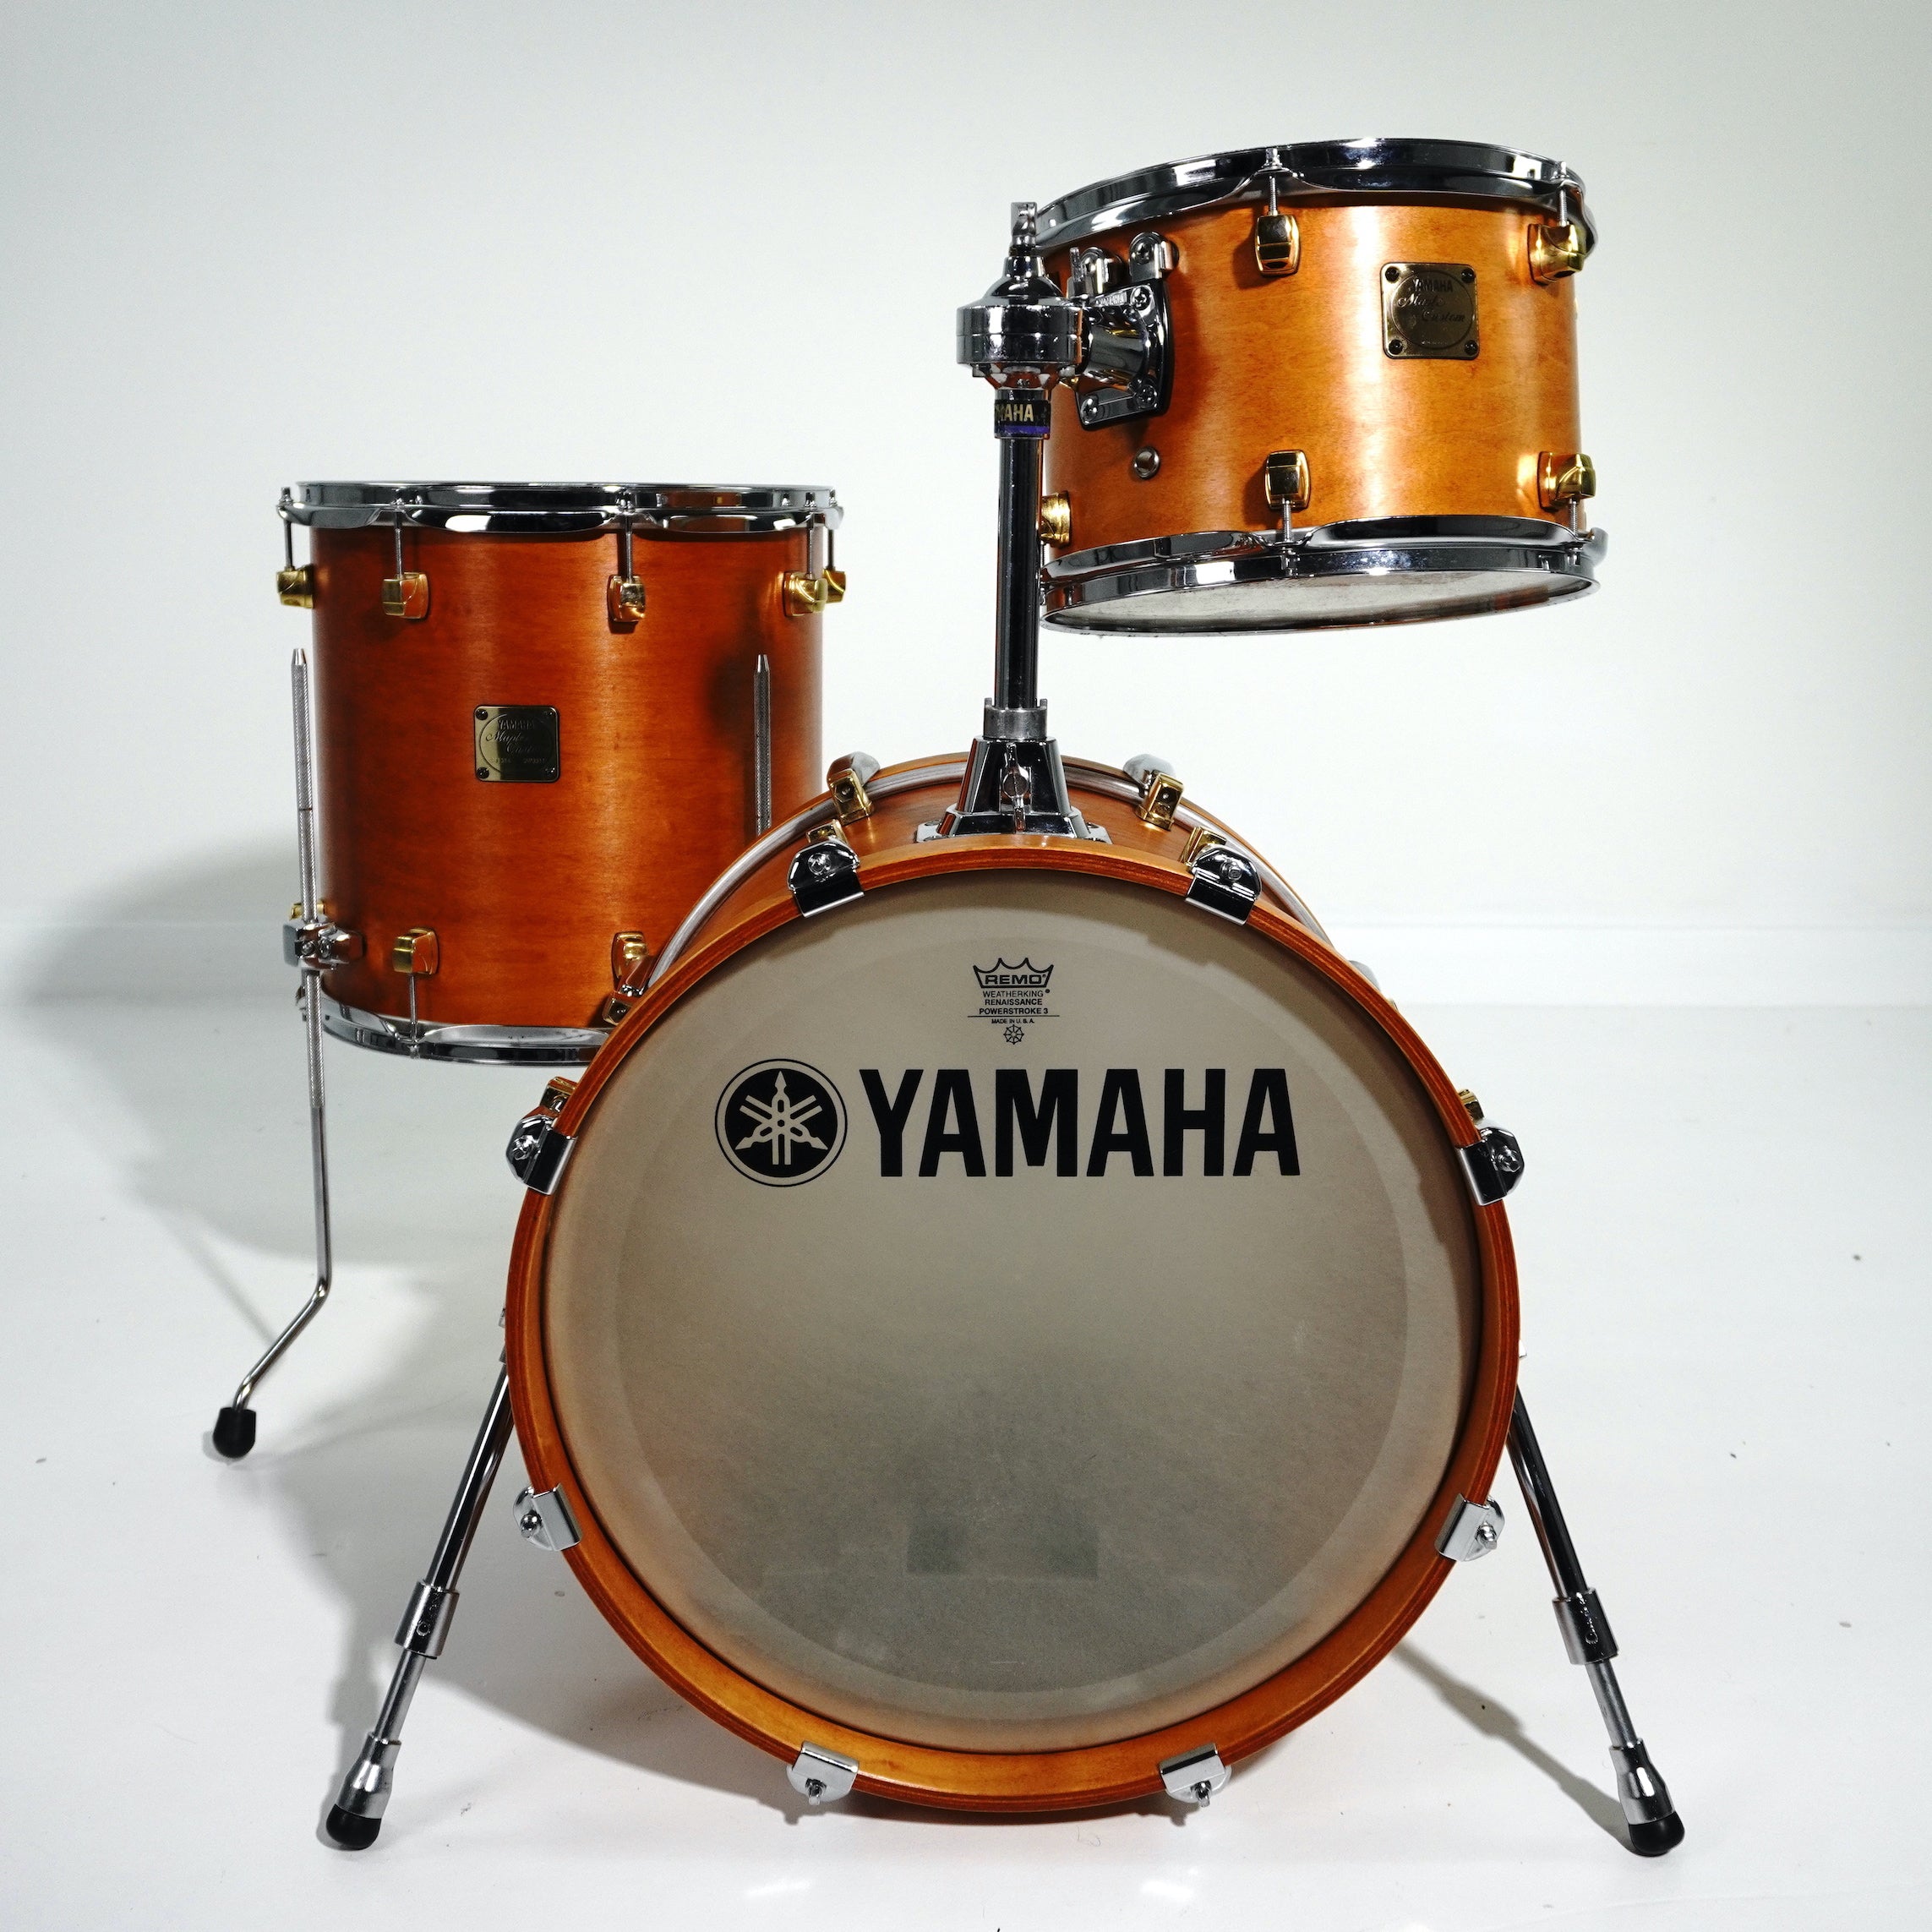 ドラムセット ヤマハ メイプルカスタム Drumset Yamaha Maple Custom